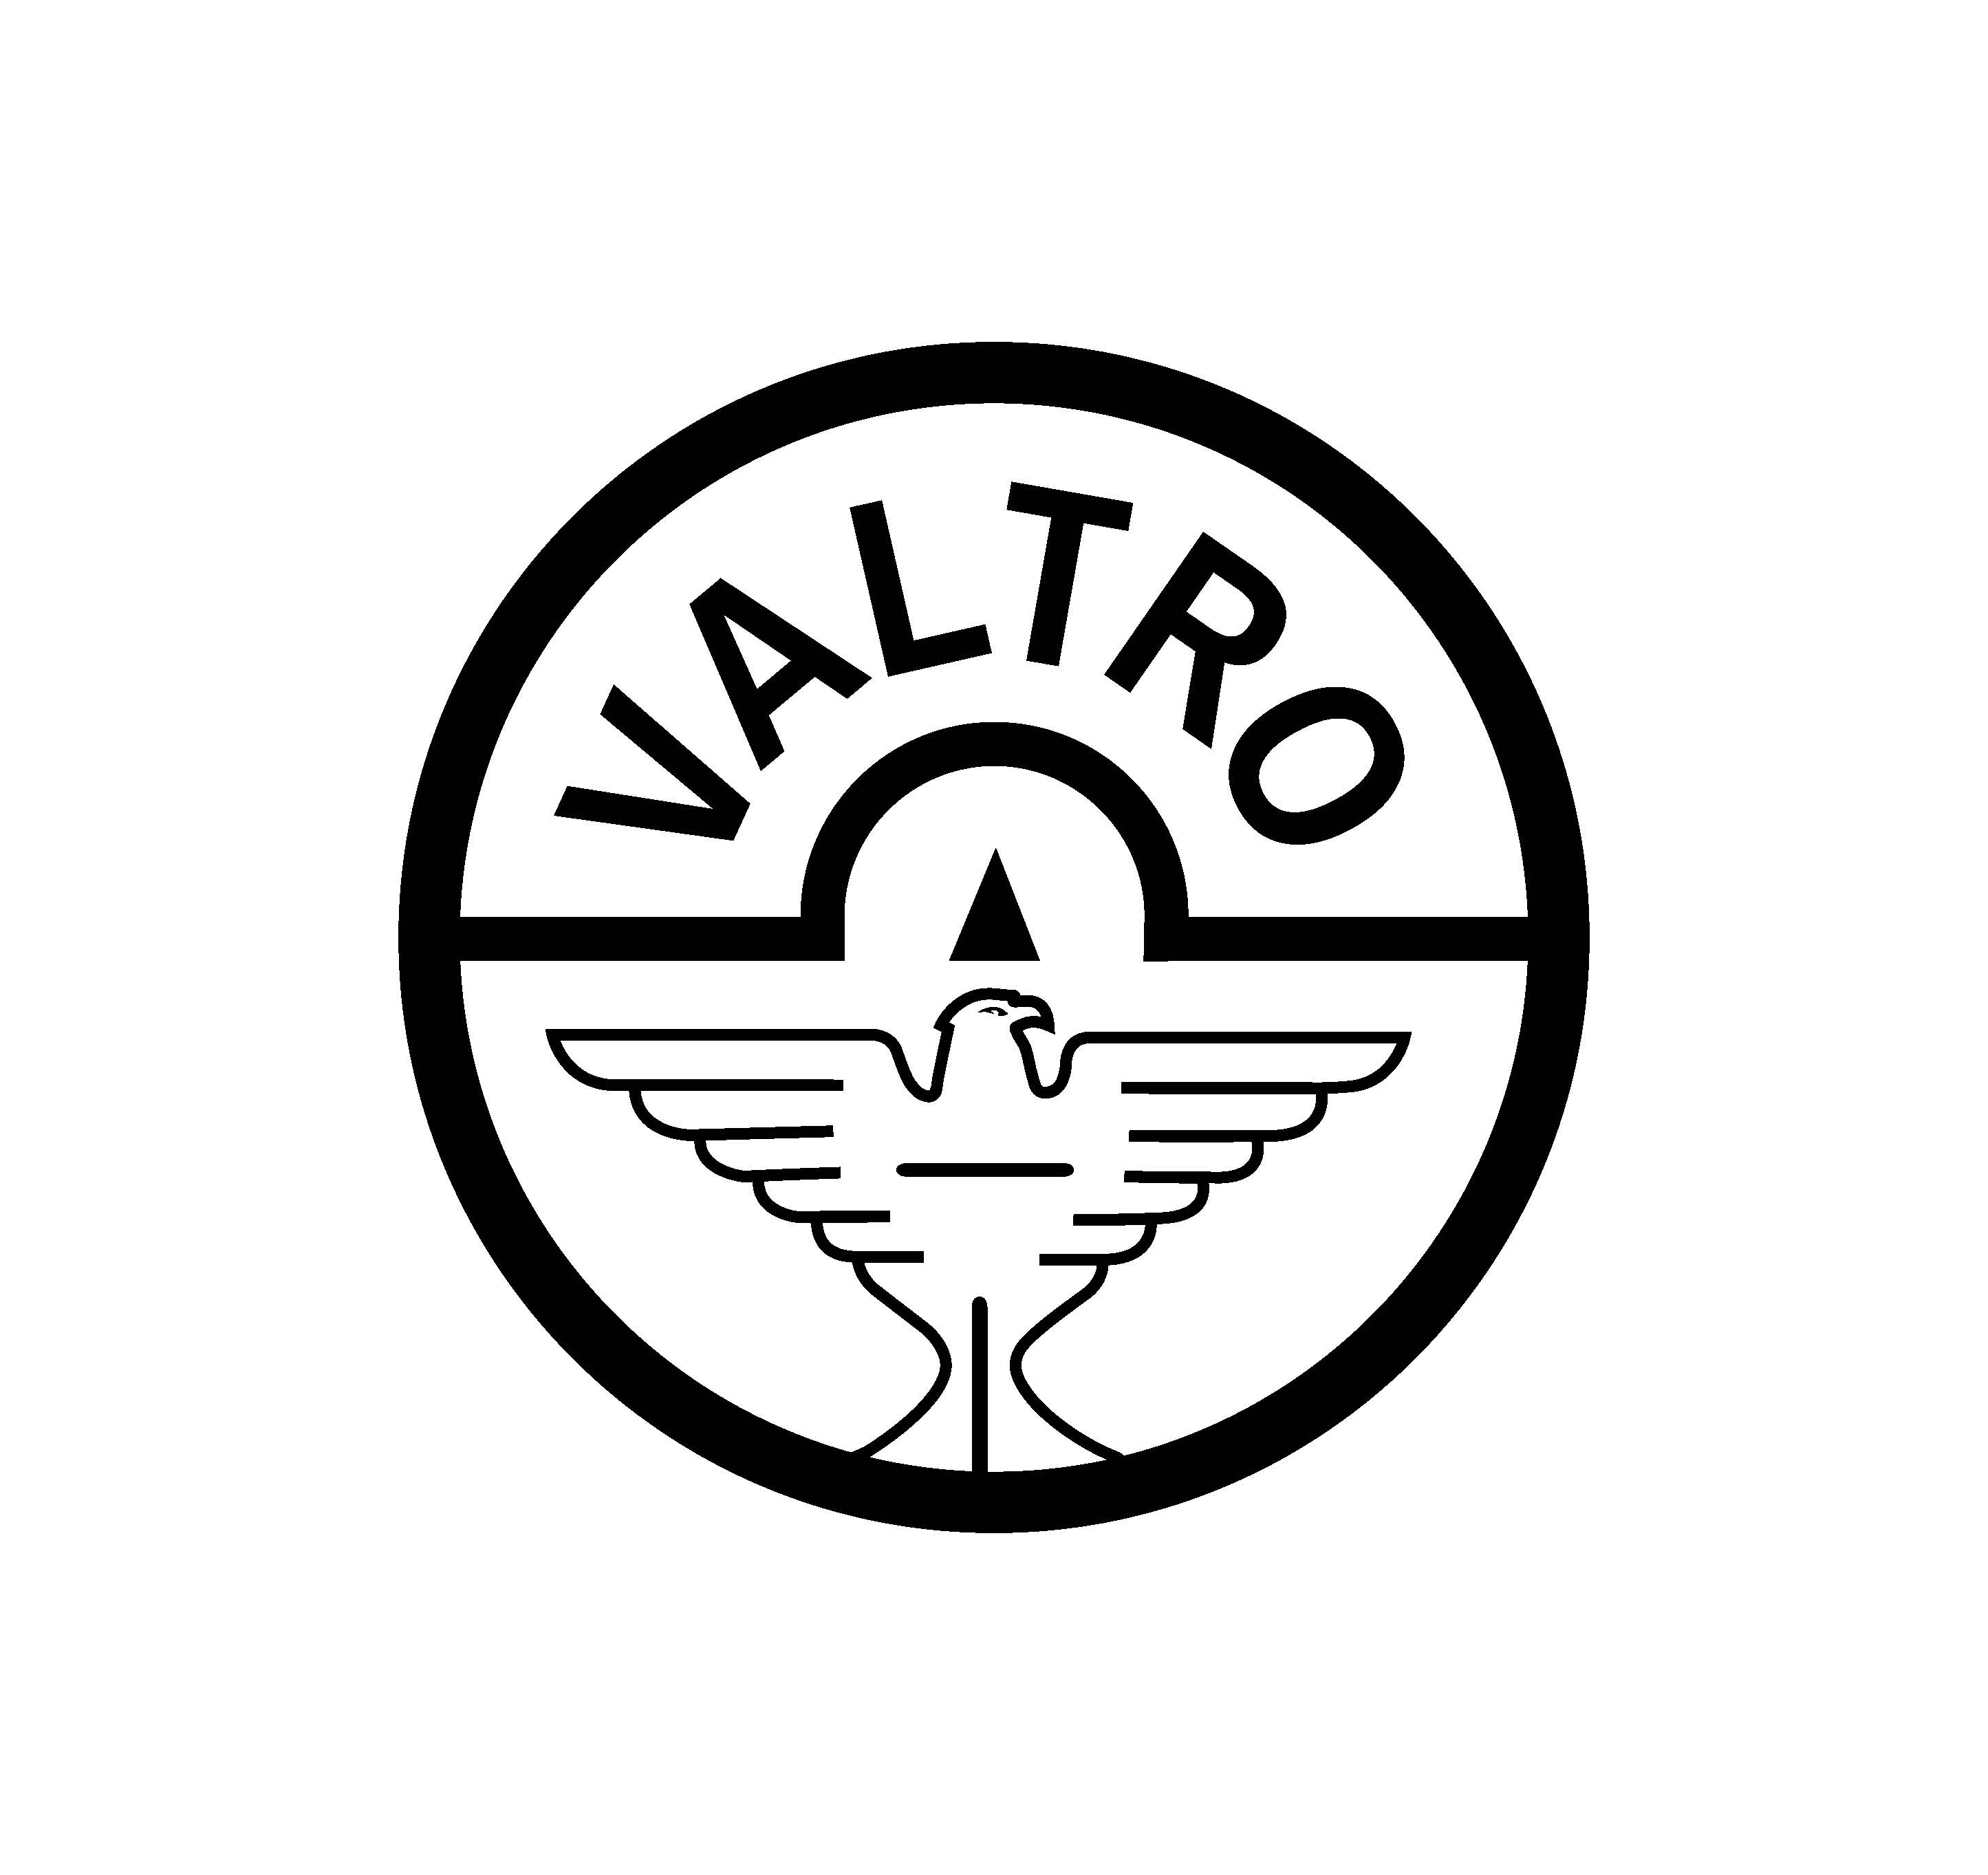 Valtro srl logo